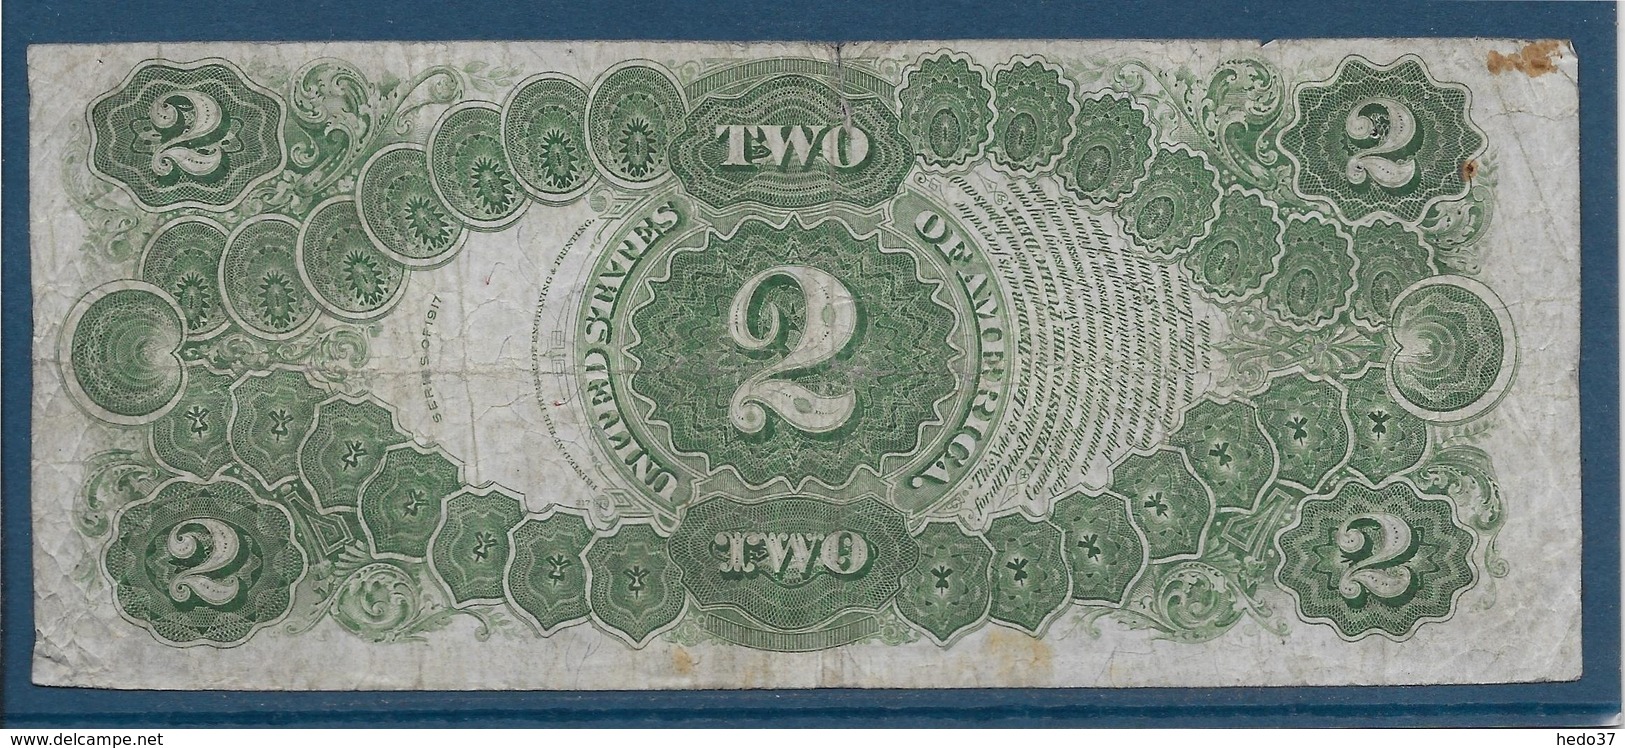 Etats Unis - 2 Dollars - 1917 - Pick N°188 - TB - Billetes De Estados Unidos (1862-1923)